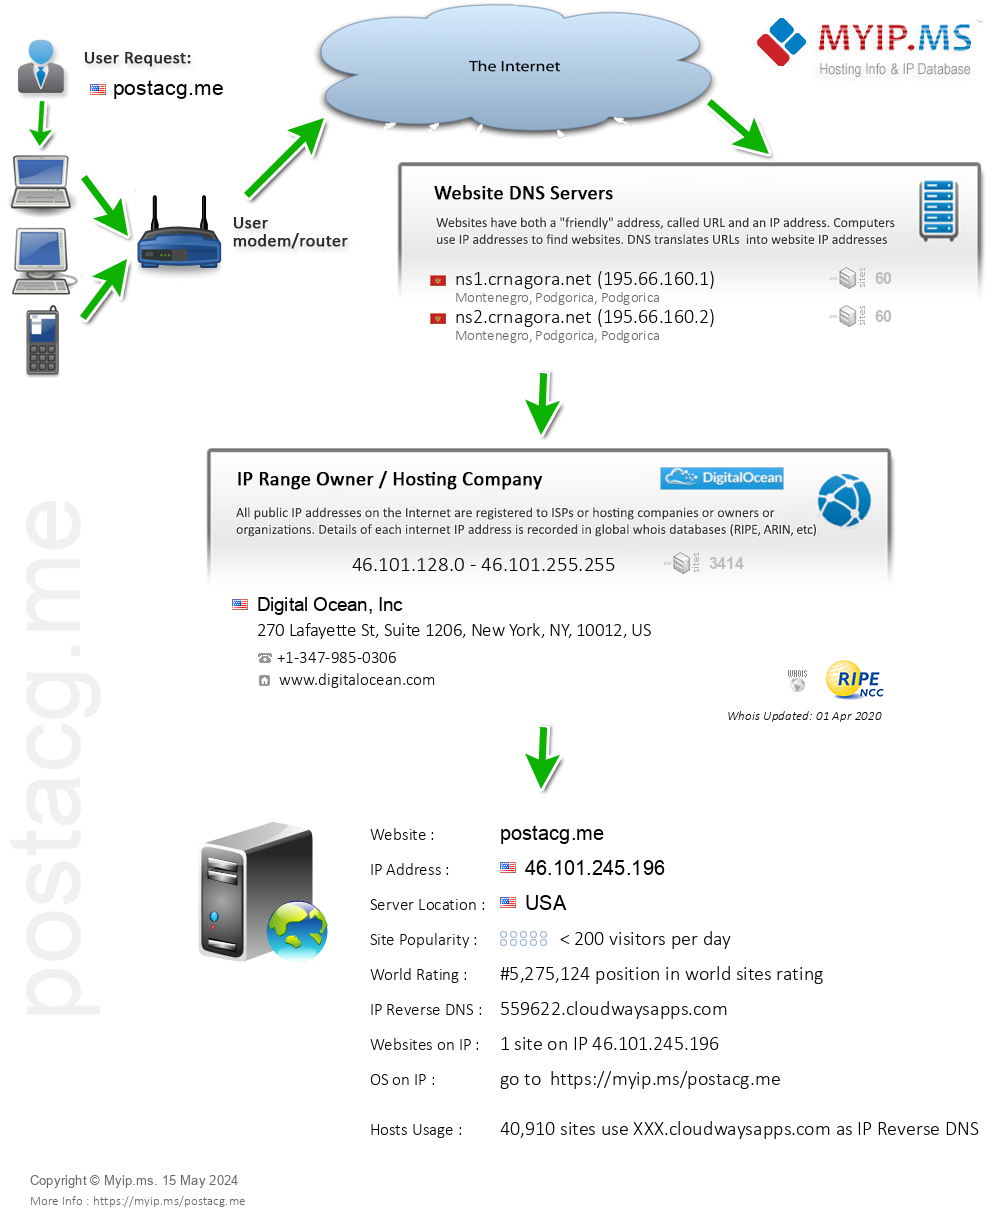 Postacg.me - Website Hosting Visual IP Diagram